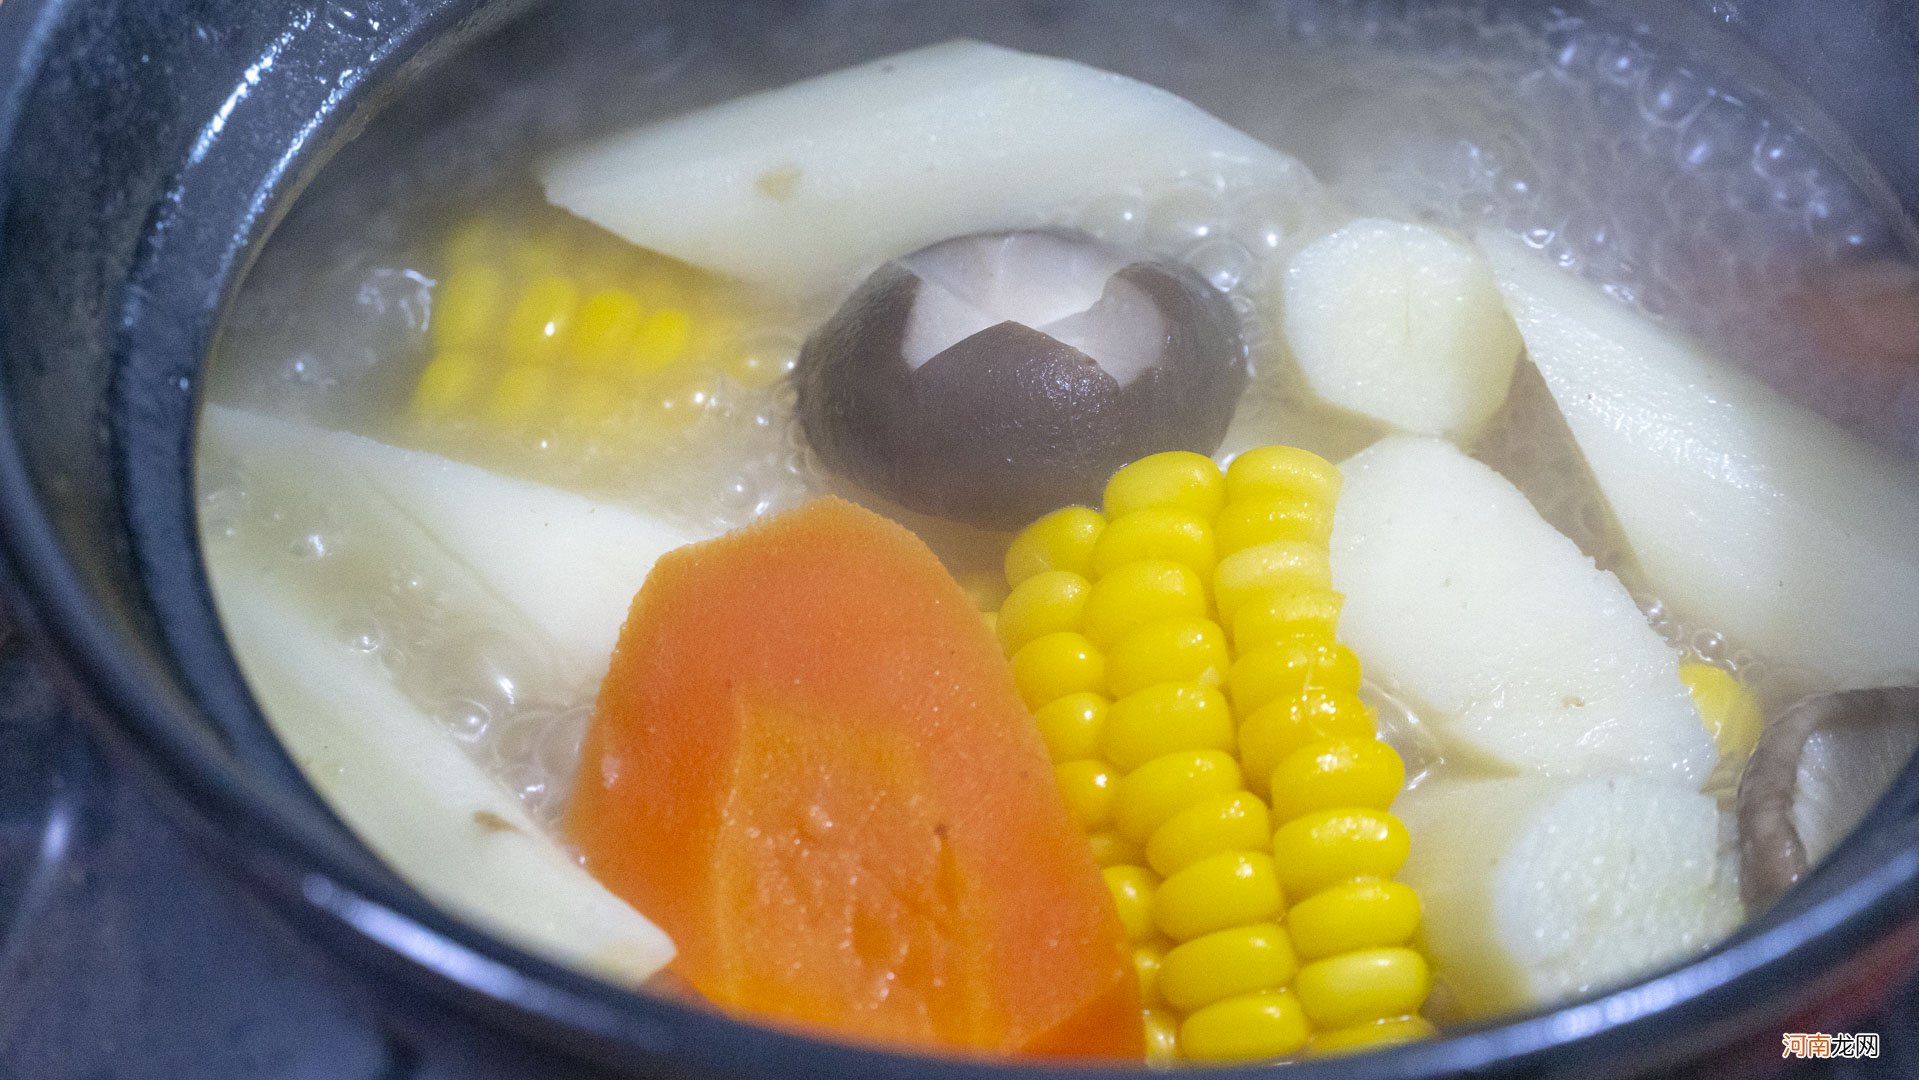 秋冬“长个”黄金期多给孩子做6道菜 冬季适合儿童的菜谱